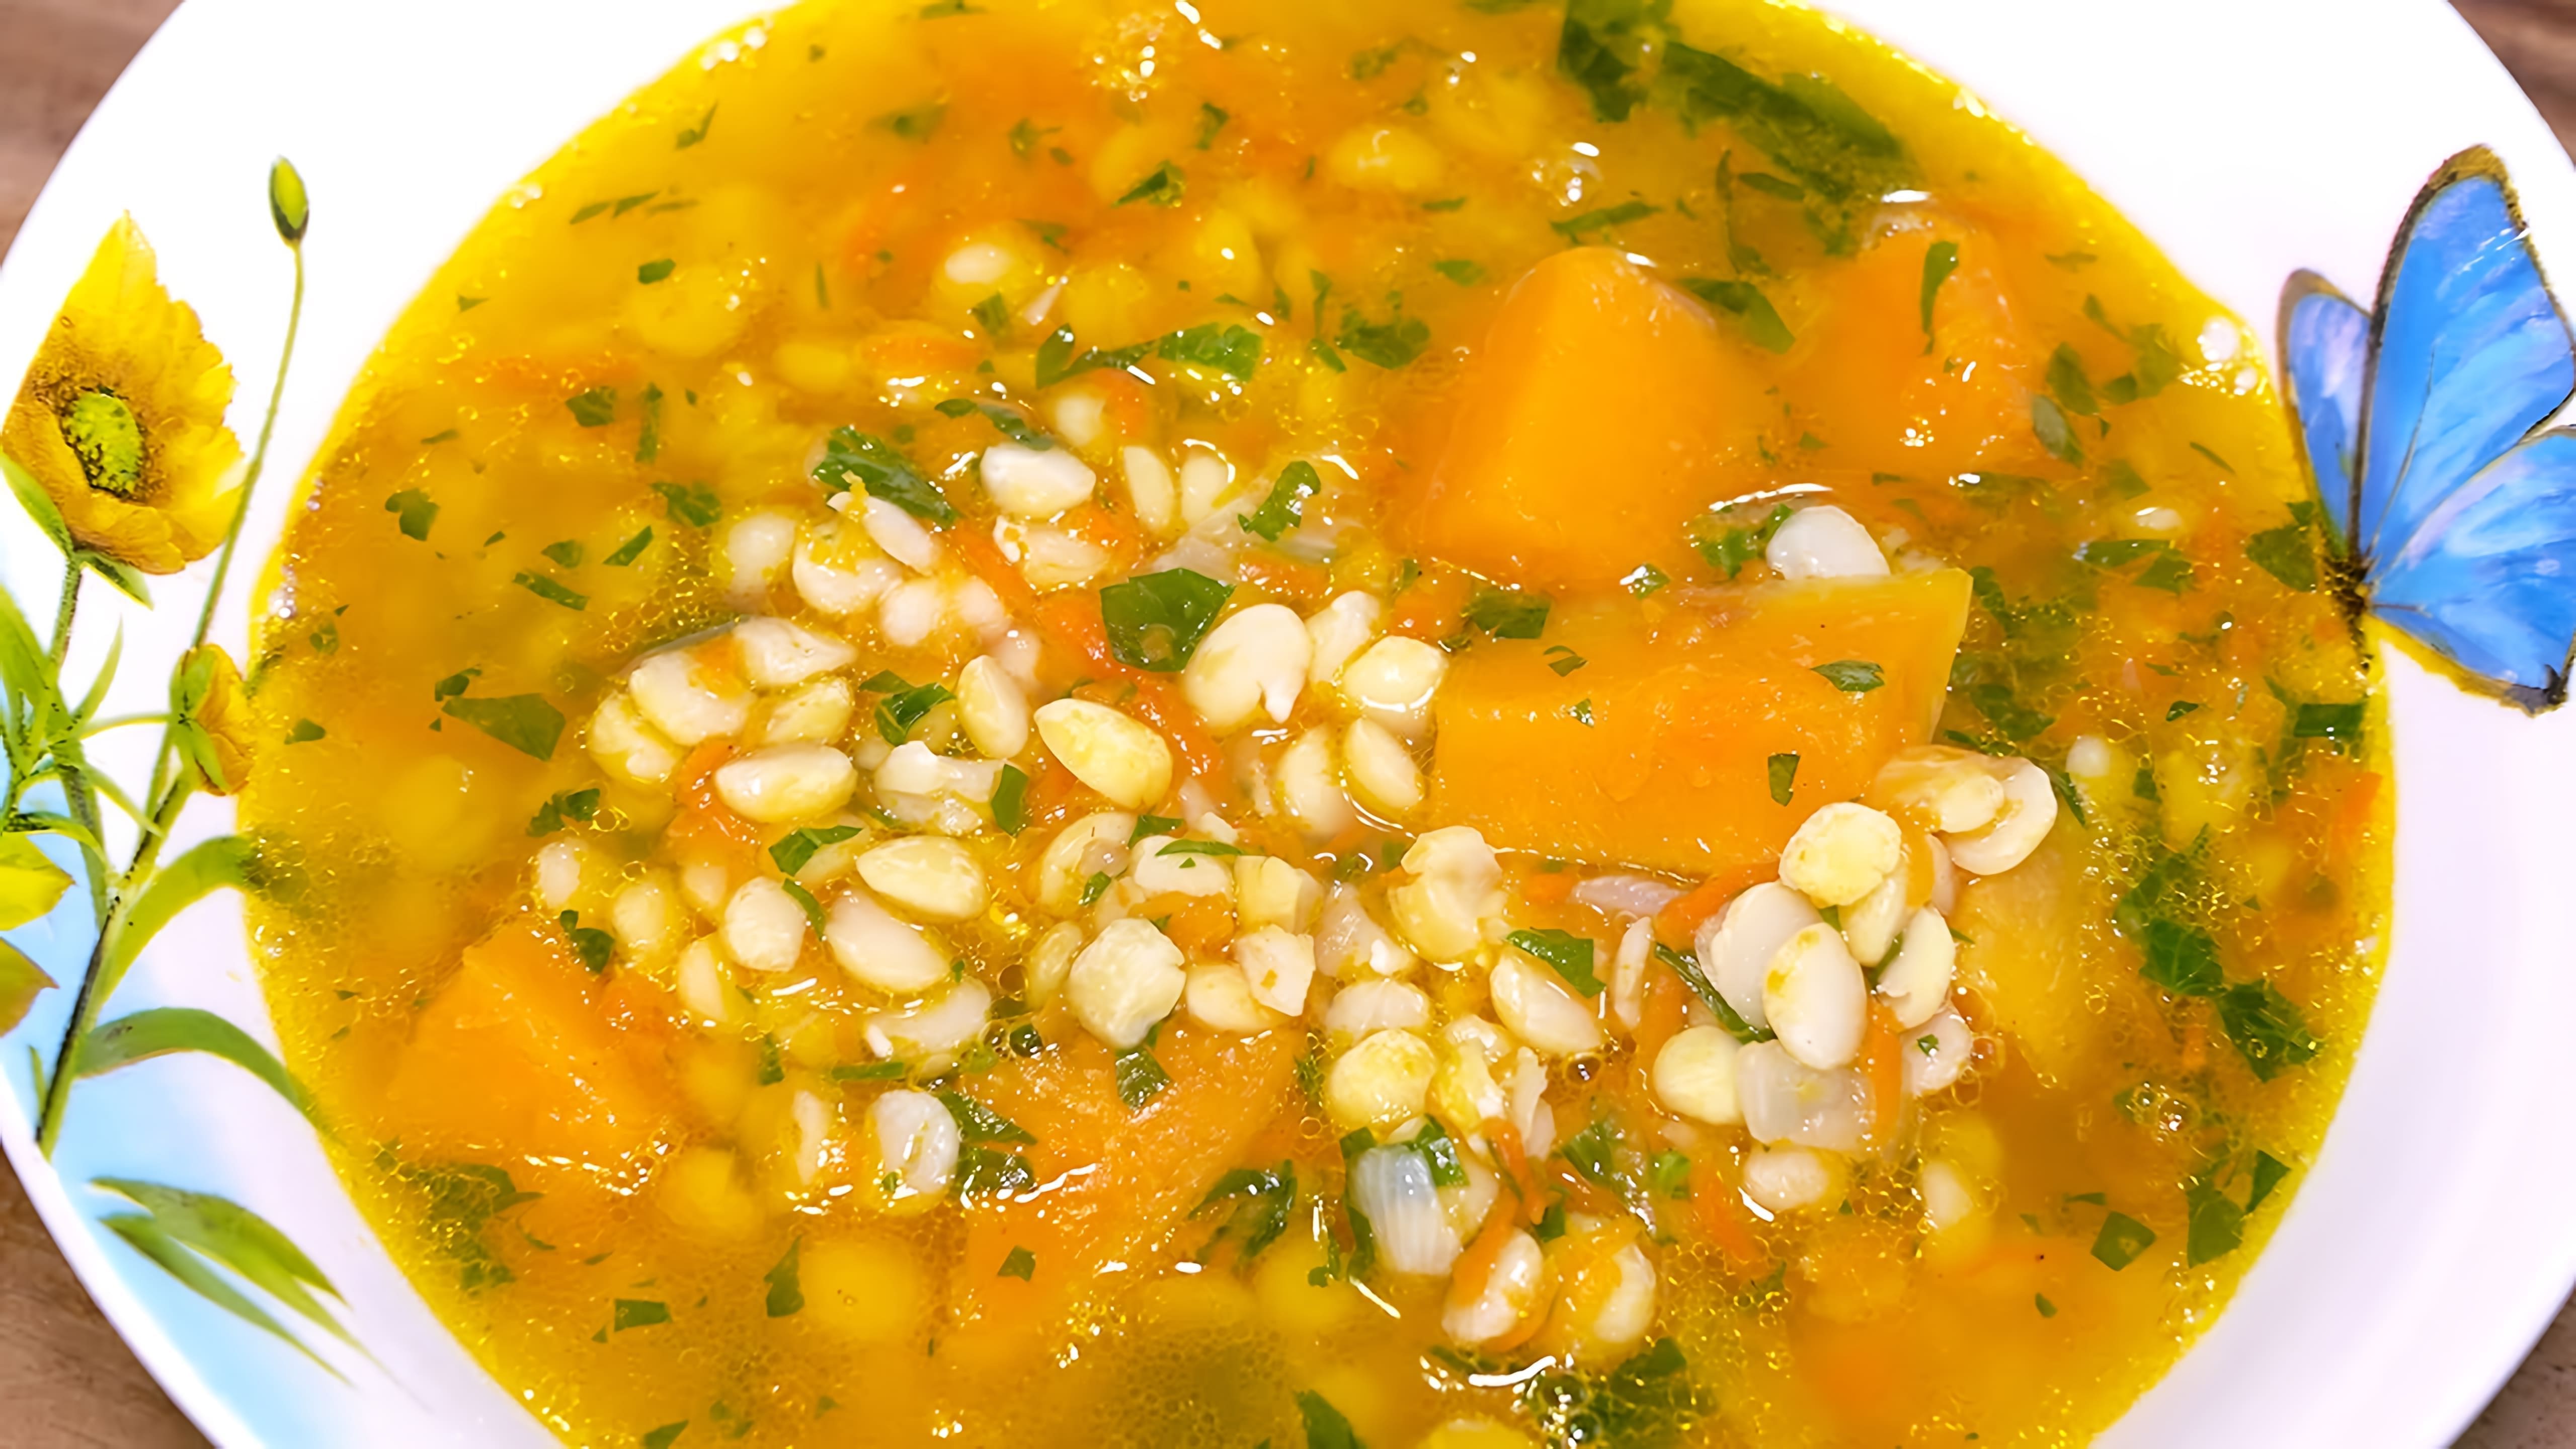 В этом видео демонстрируется рецепт приготовления горохового супа с тыквой